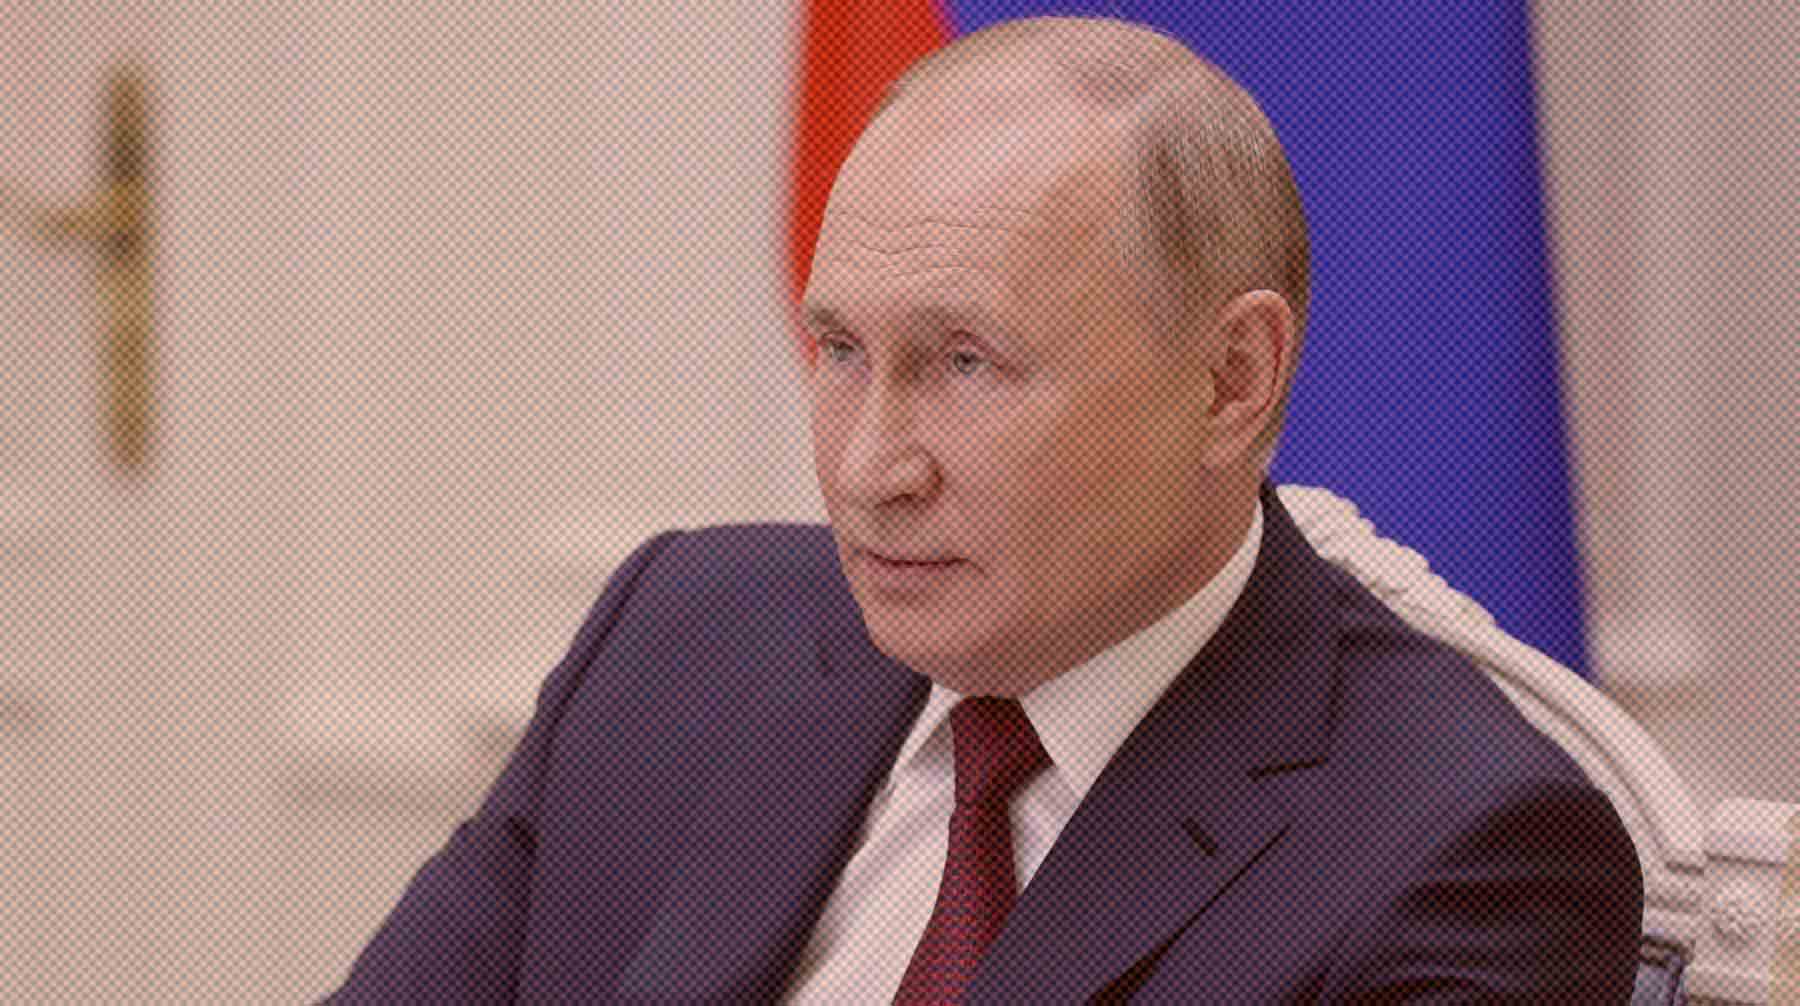 Президент на встрече с членами СПЧ призвал проанализировать дела о превышении самообороны и защитить людей Фото:  Global Look Press / Kremlin Pool